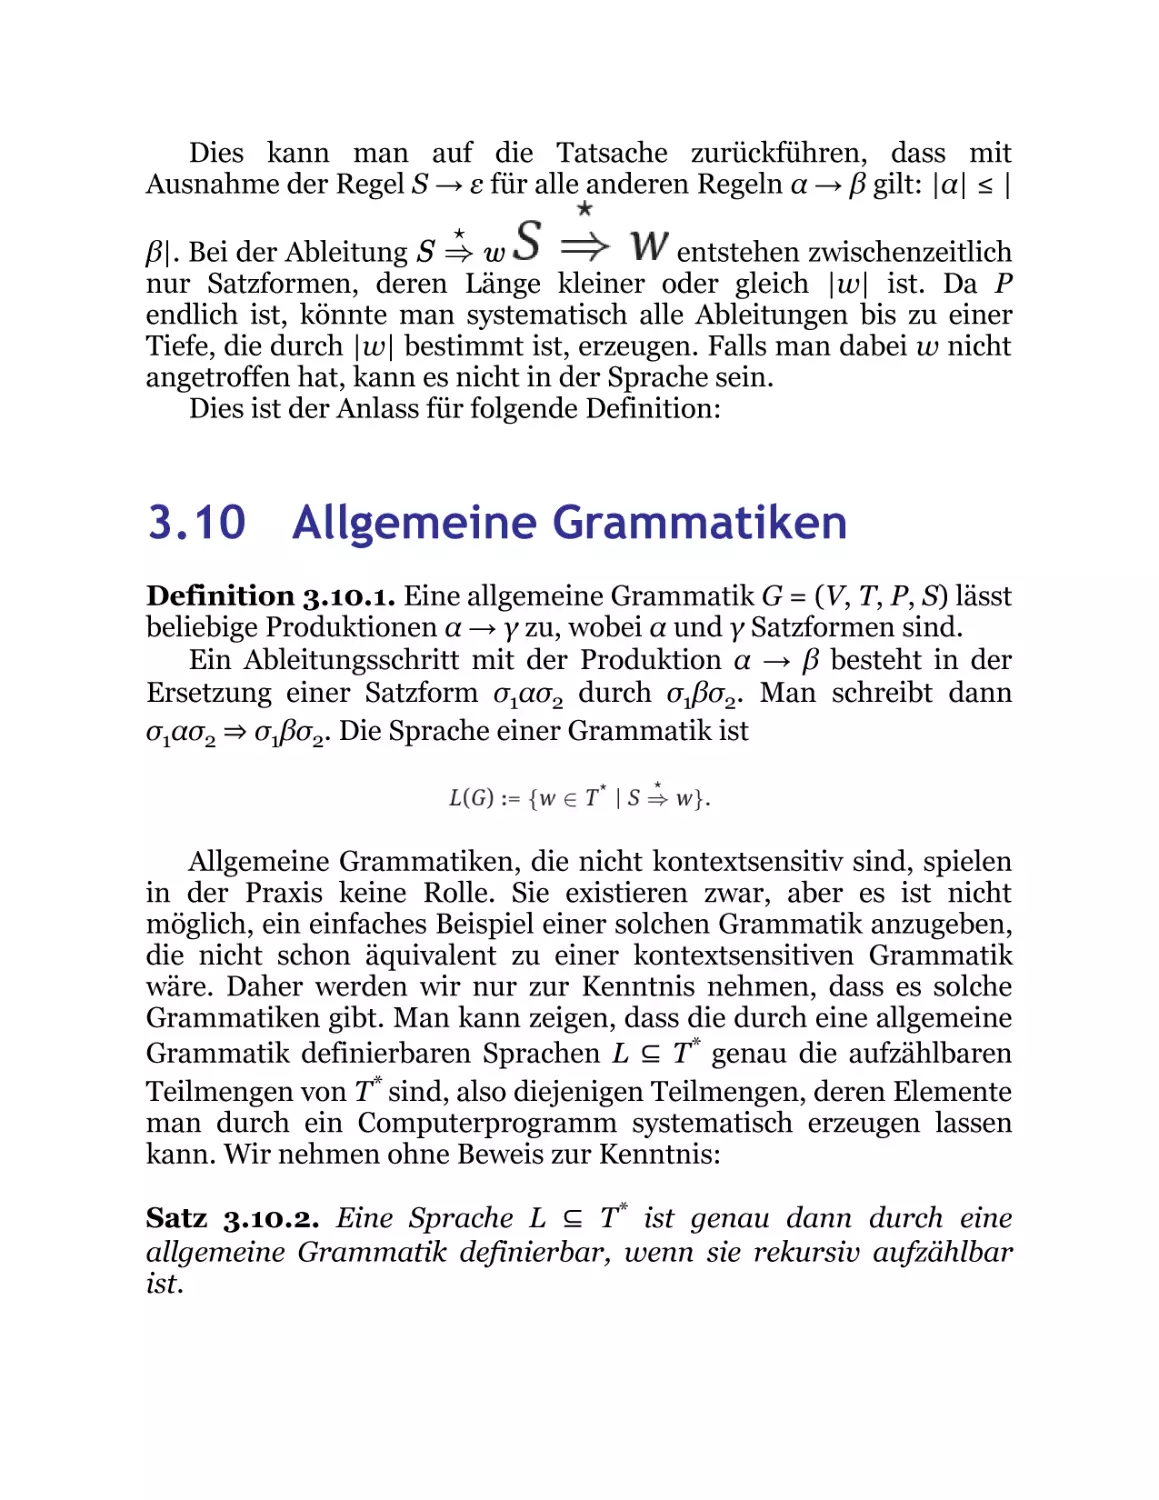 3.10 Allgemeine Grammatiken